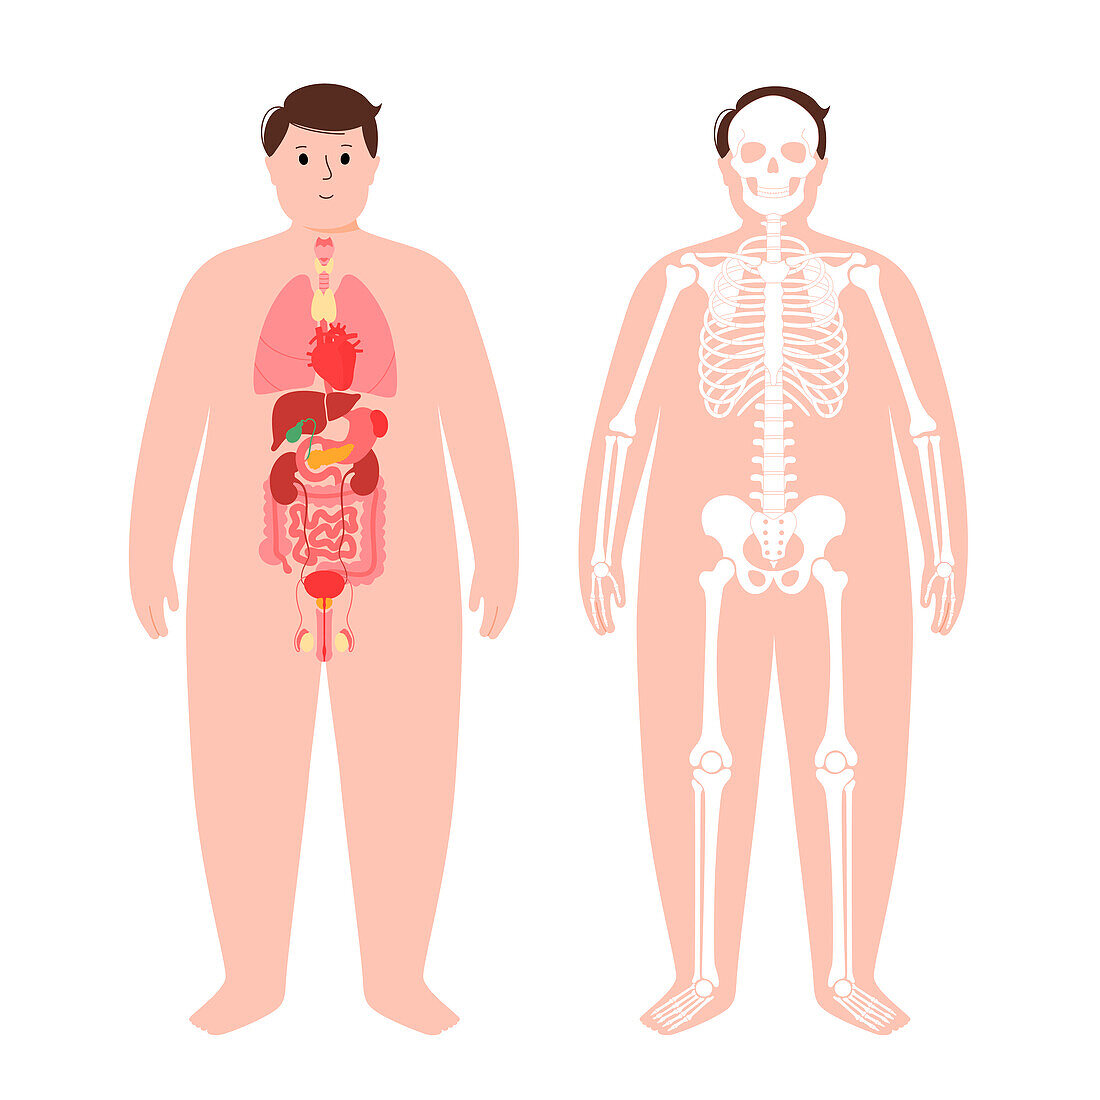 Organs and skeleton, illustration